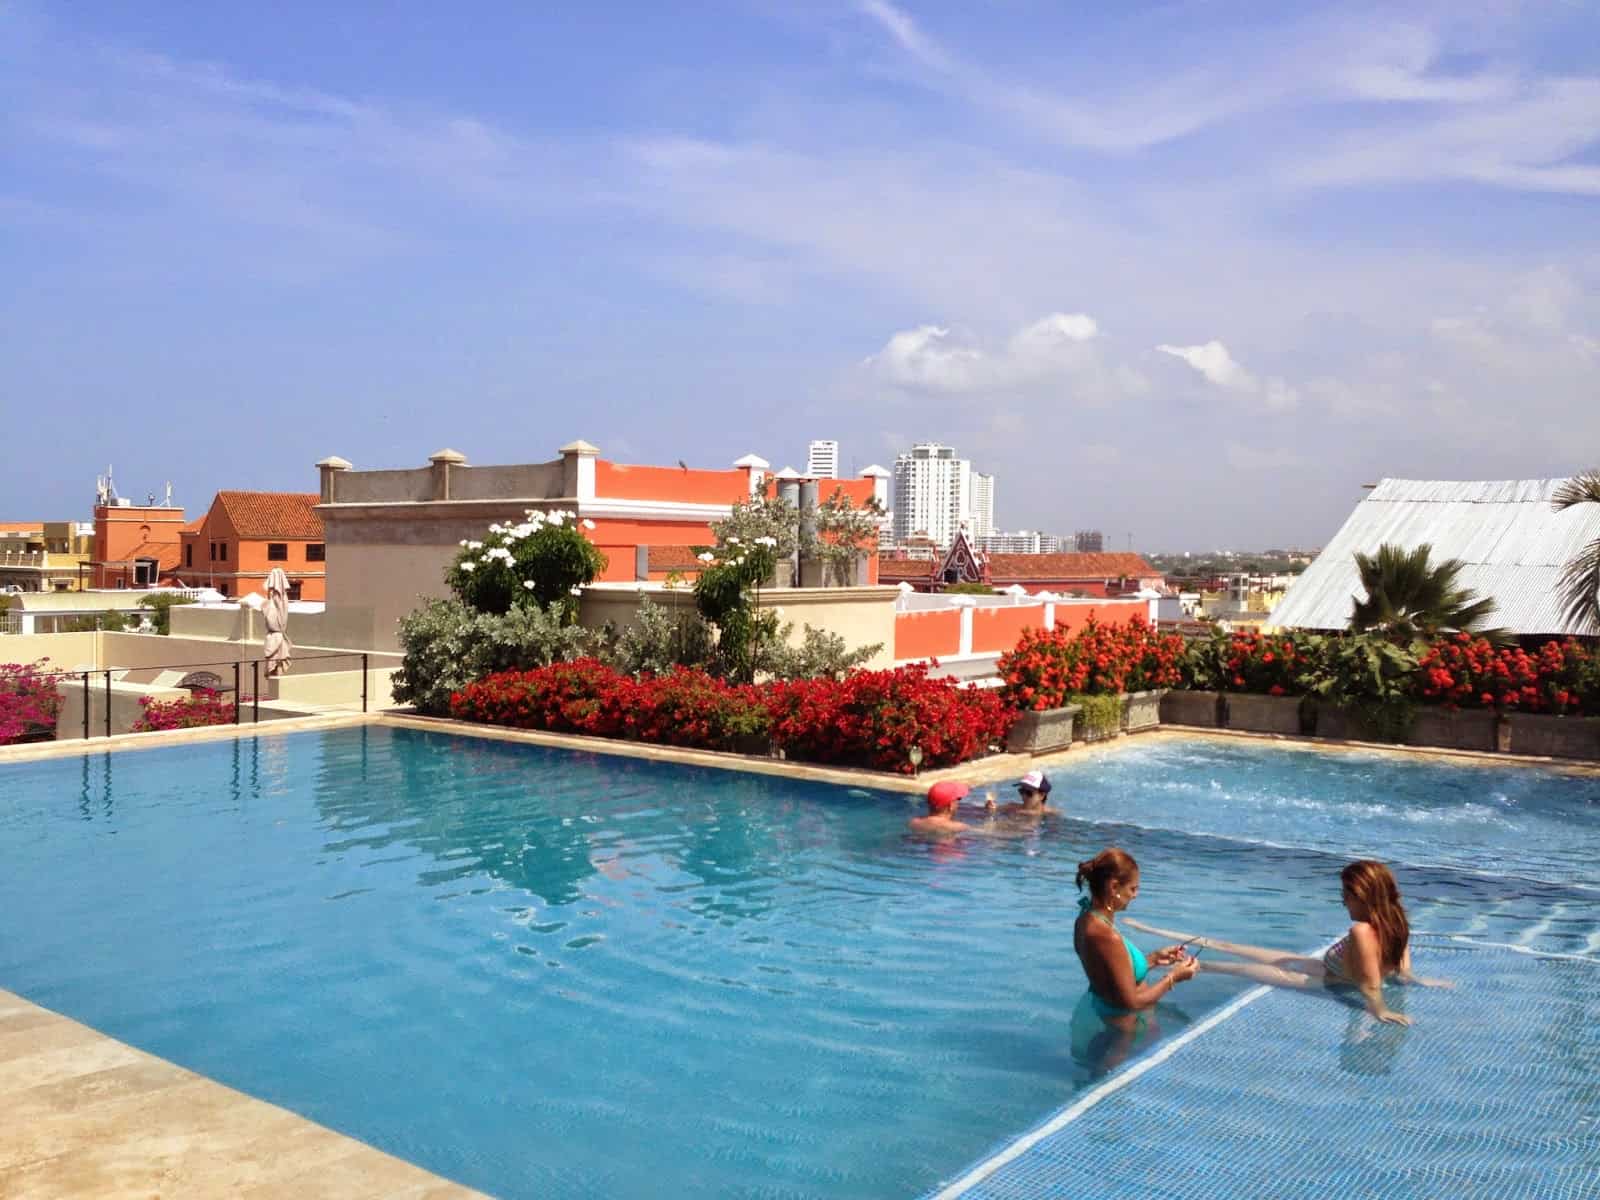 Pool at Bastión Luxury Hotel in Cartagena, Colombia